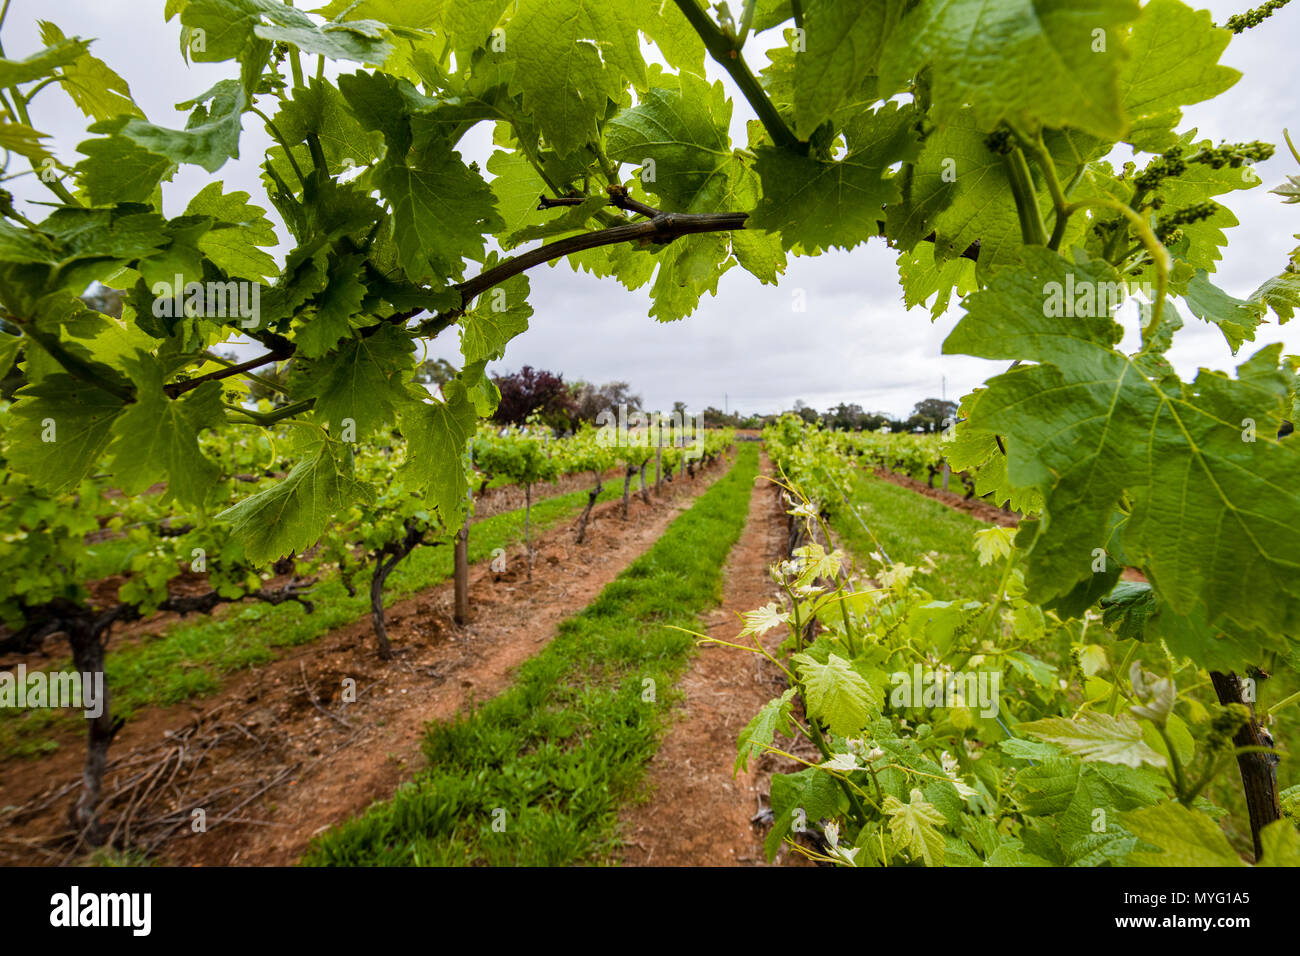 A Magill Estate Shiraz grape vine stretches over a path in a vineyard. Stock Photo